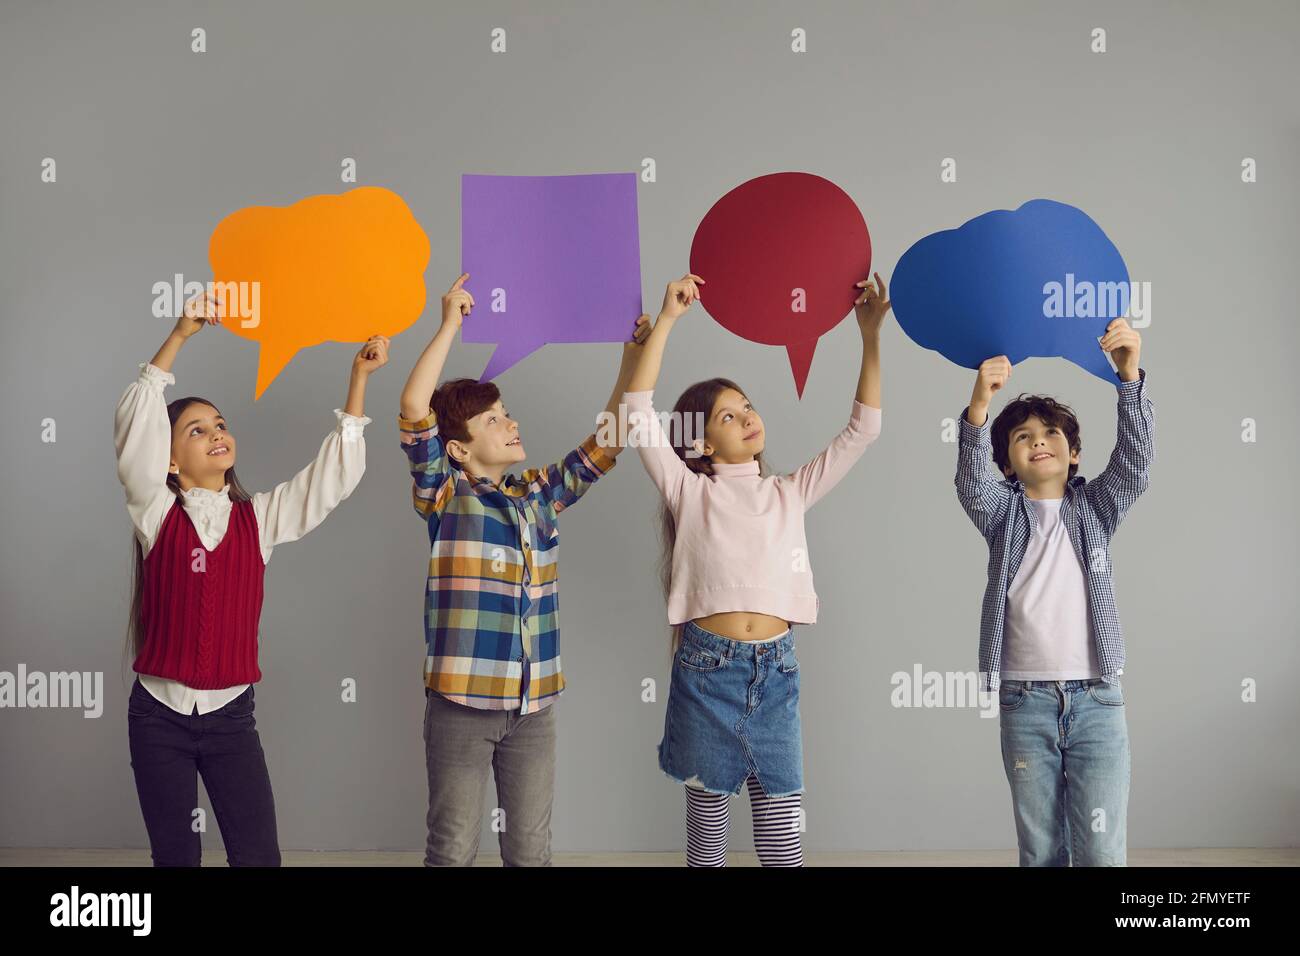 Gruppe von glücklichen kleinen Kindern, die im Studio stehen und halten Mehrfarbige Sprechblasen Stockfoto